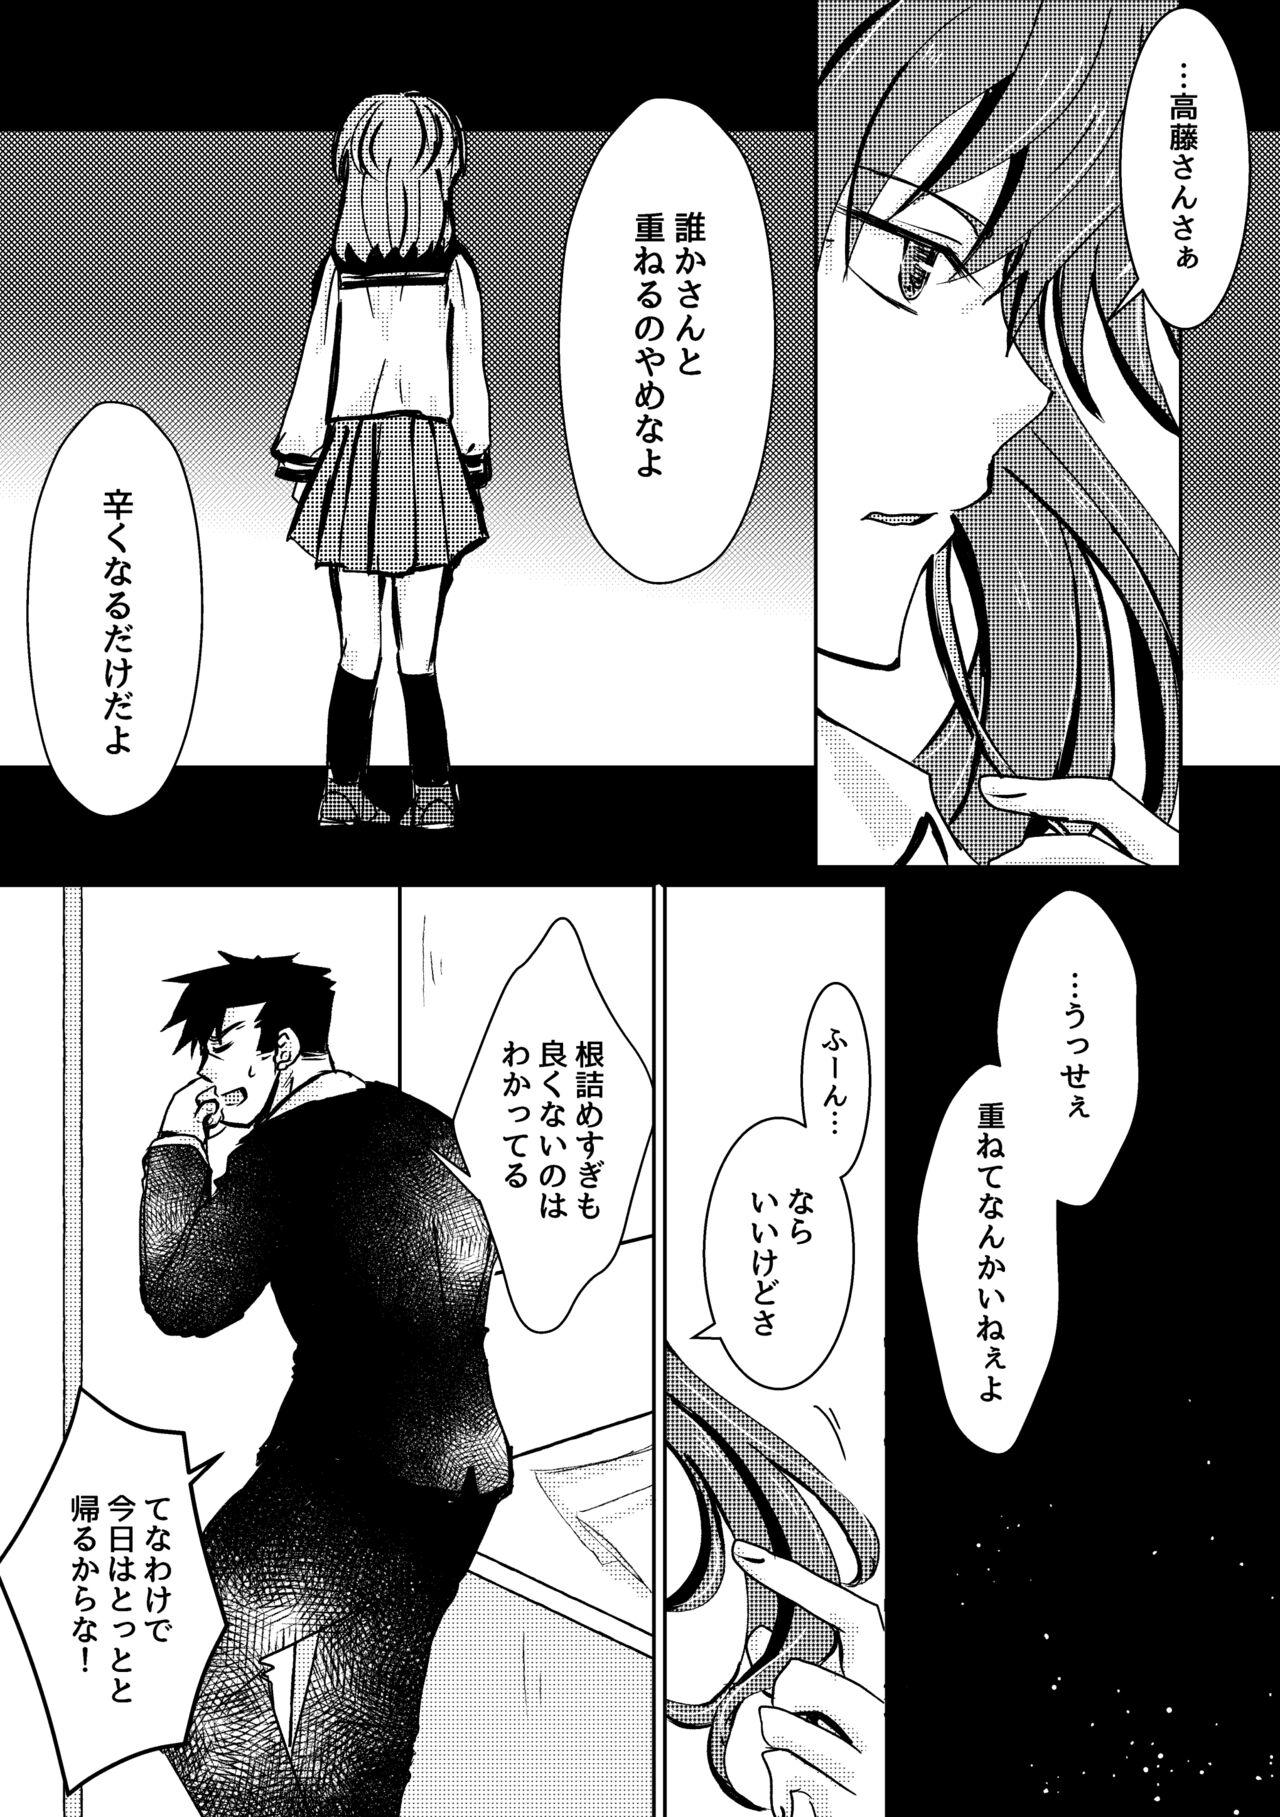 Bizarre Kaju Yoru no Hanaka Episode 2 Man - Page 5